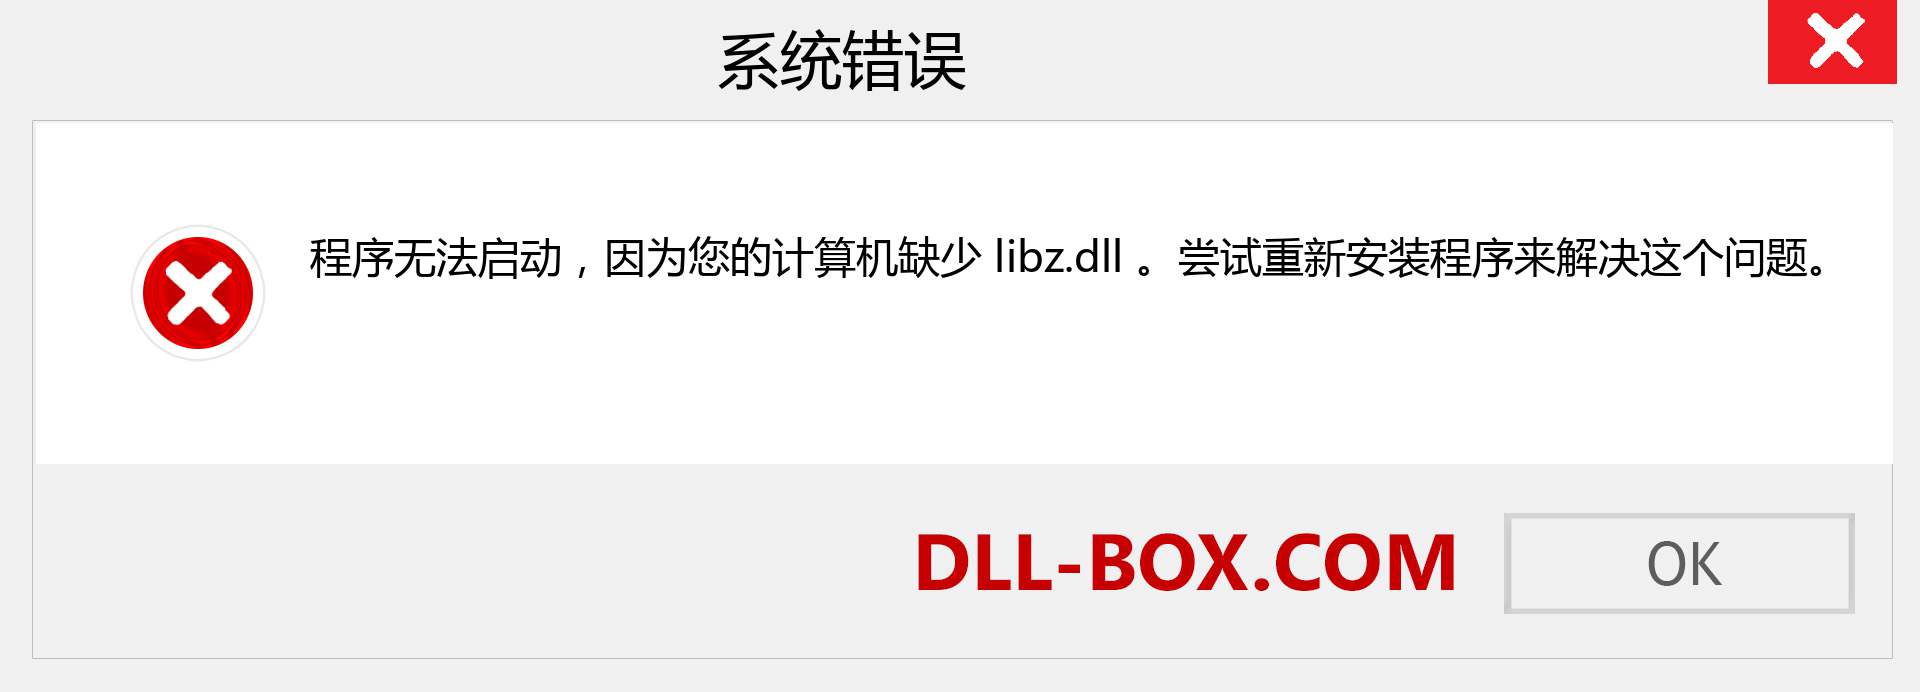 libz.dll 文件丢失？。 适用于 Windows 7、8、10 的下载 - 修复 Windows、照片、图像上的 libz dll 丢失错误